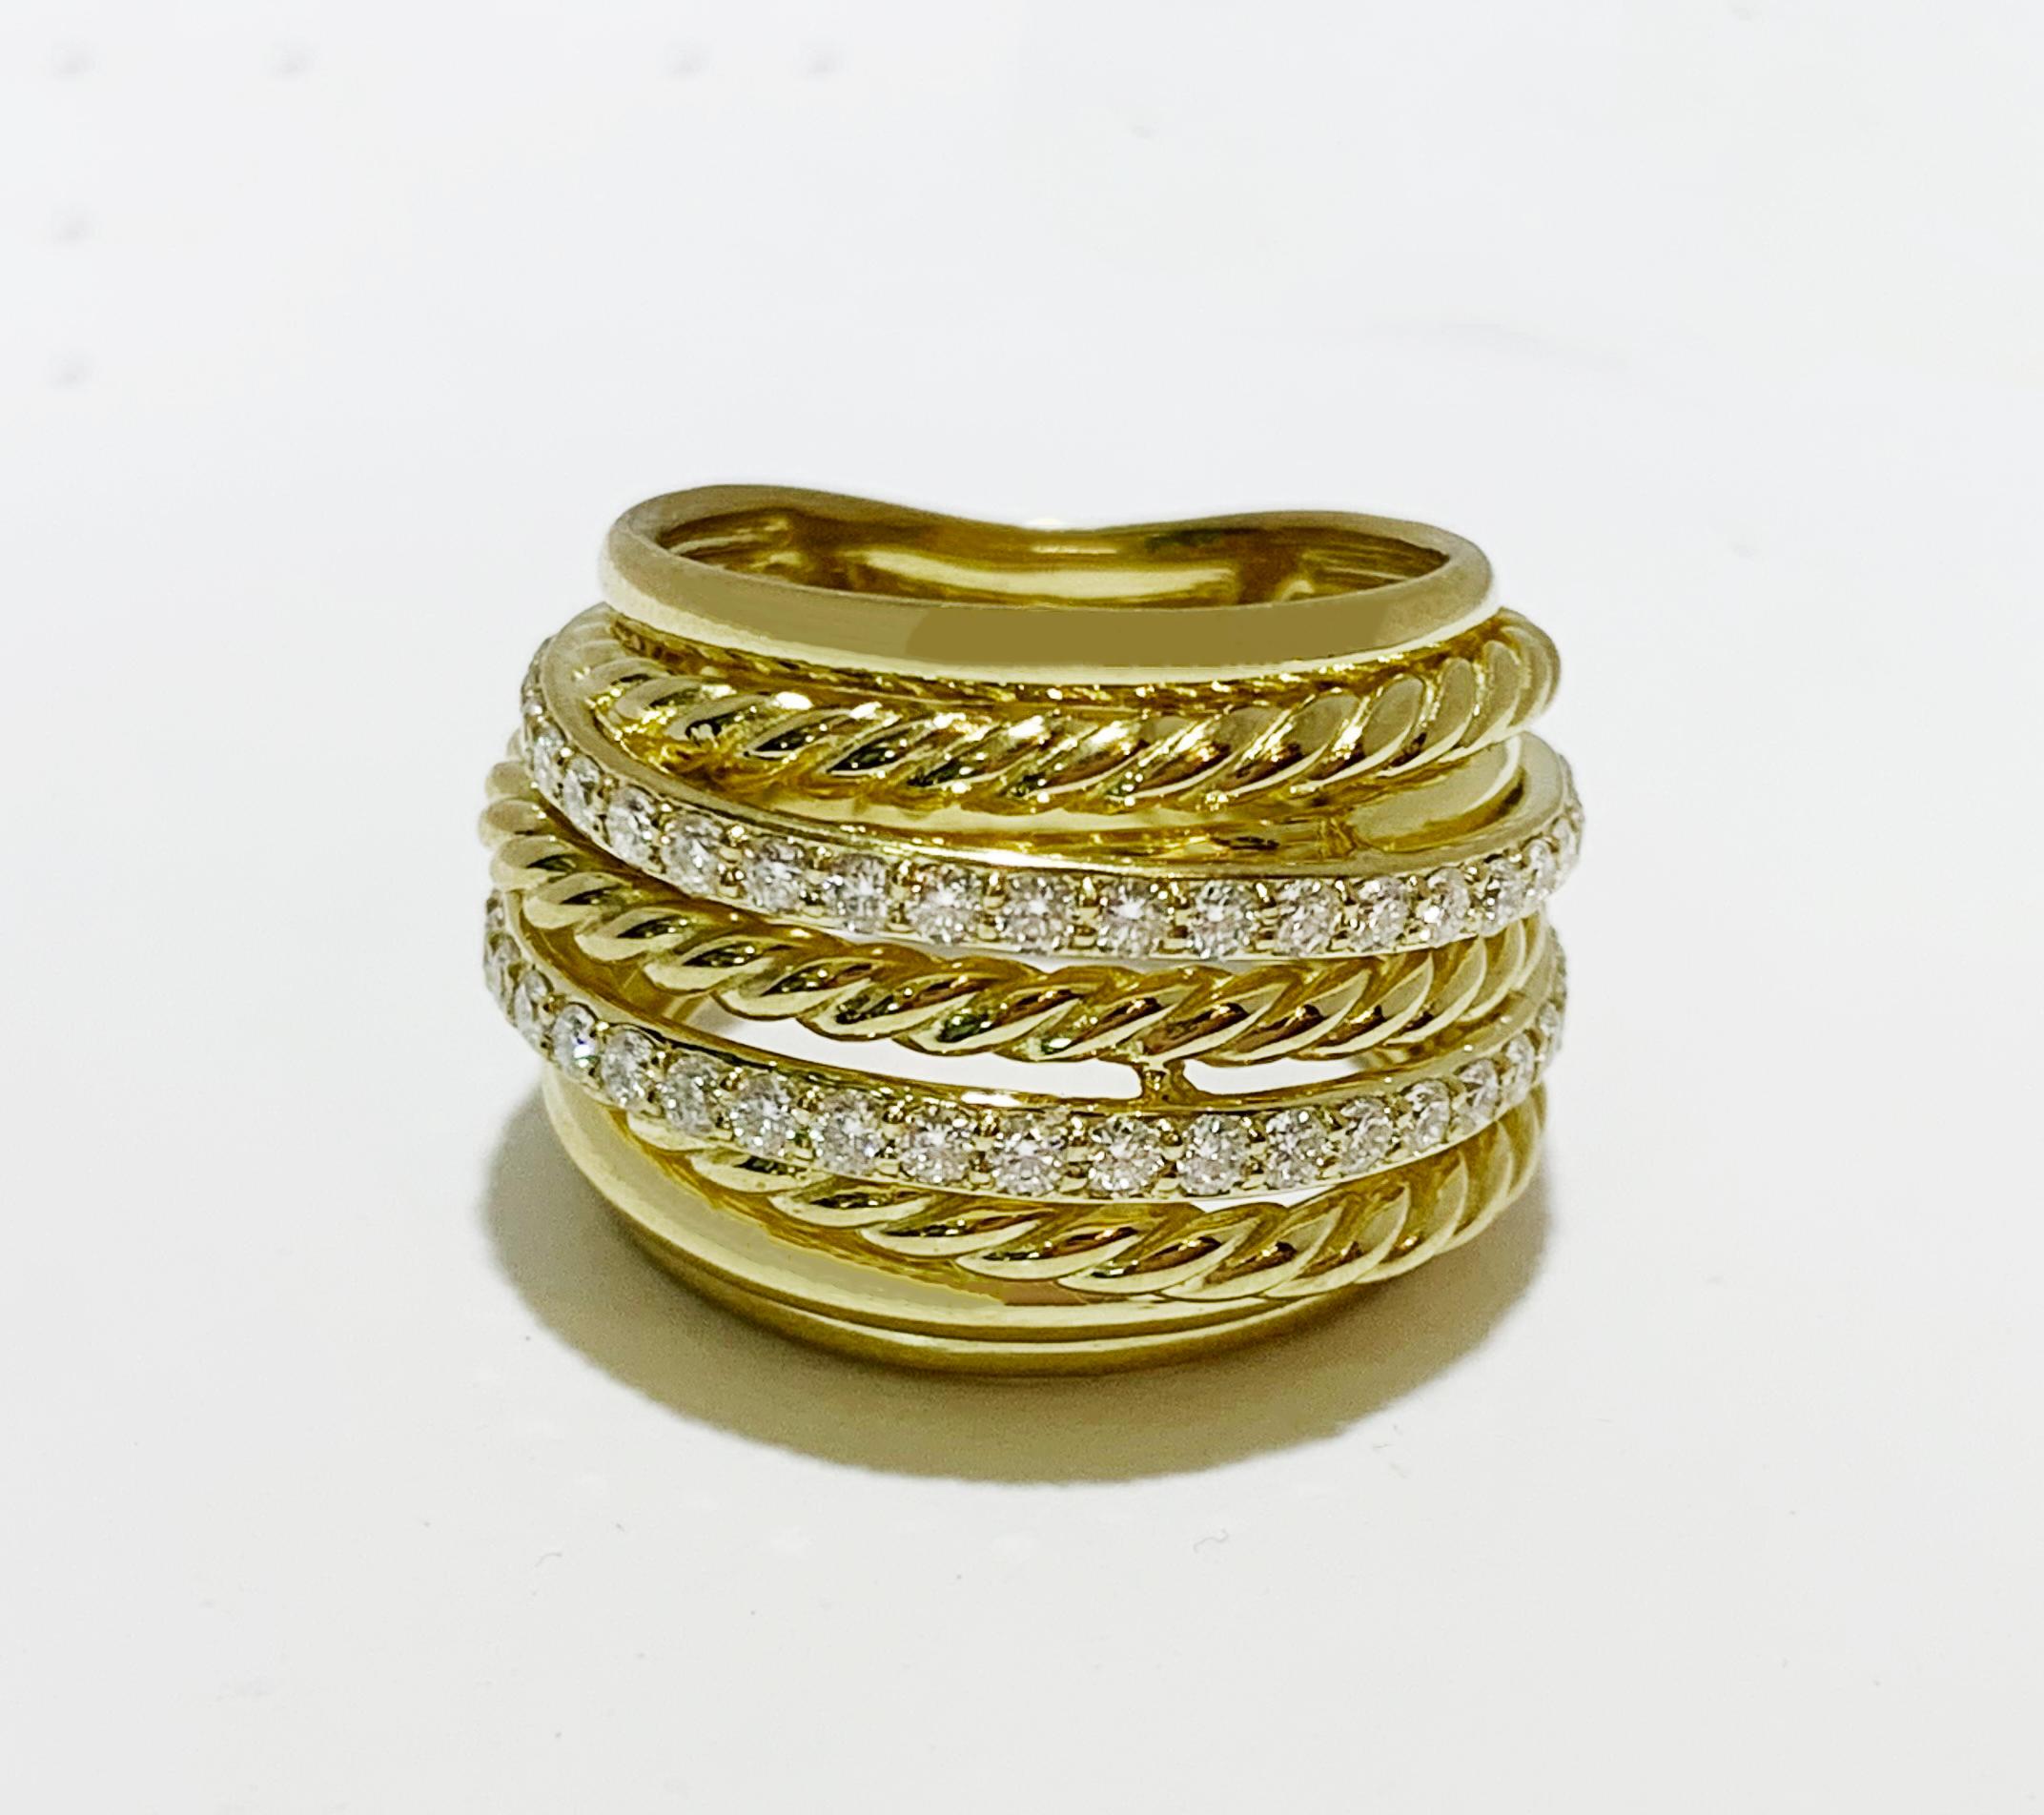 La collection Crossover
-or jaune 18 k
-Taille de l'anneau : 4.5
-Largeur de l'anneau : 0,3-0,7